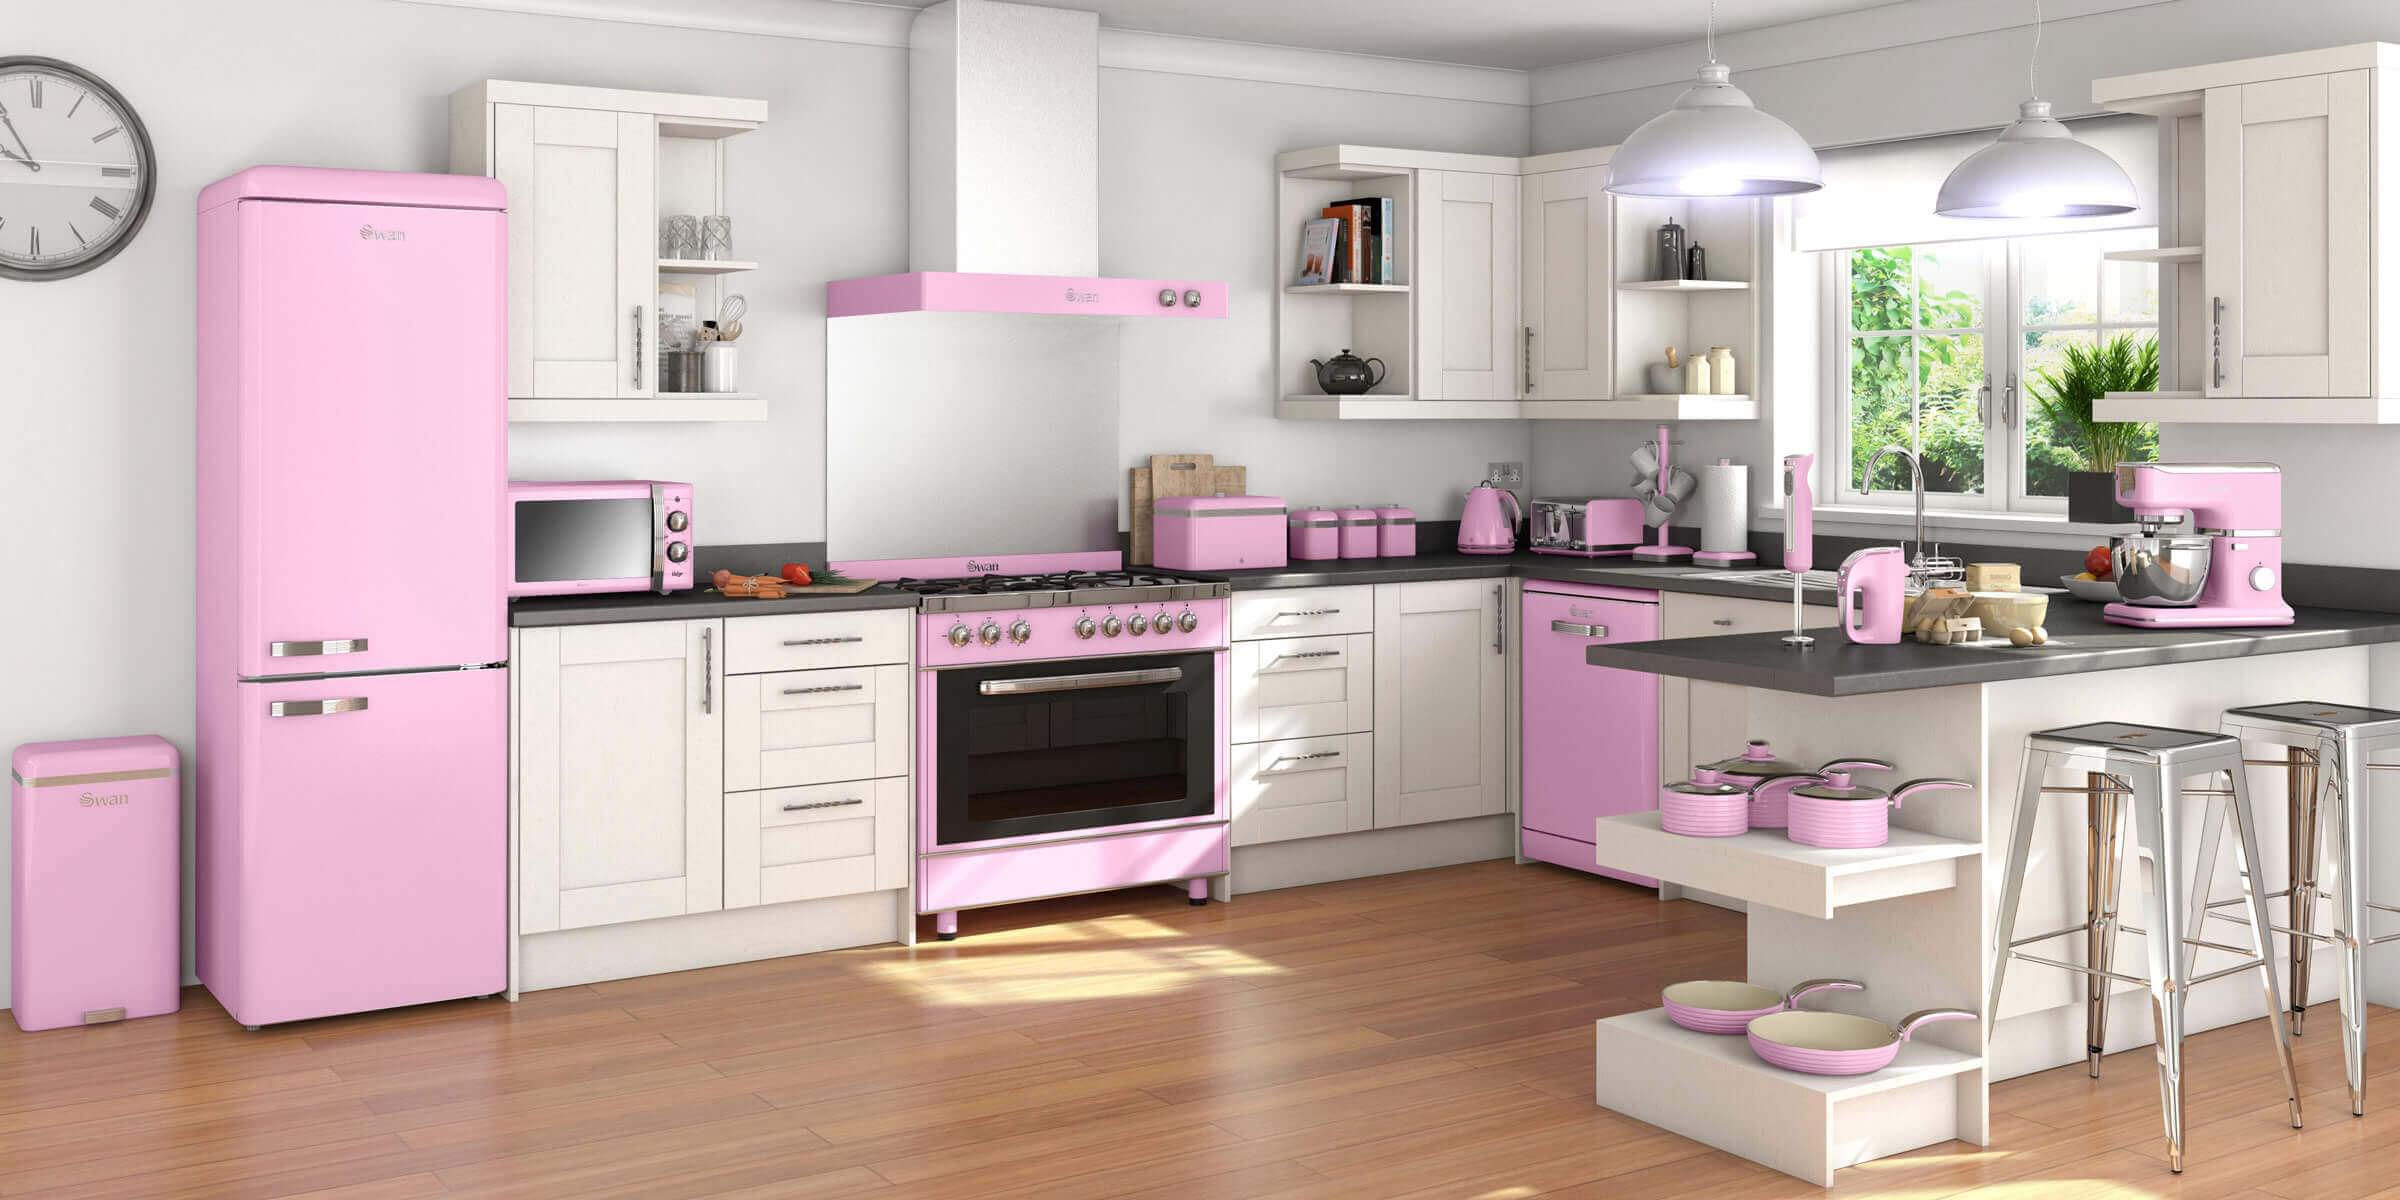 pink kitchen appliances